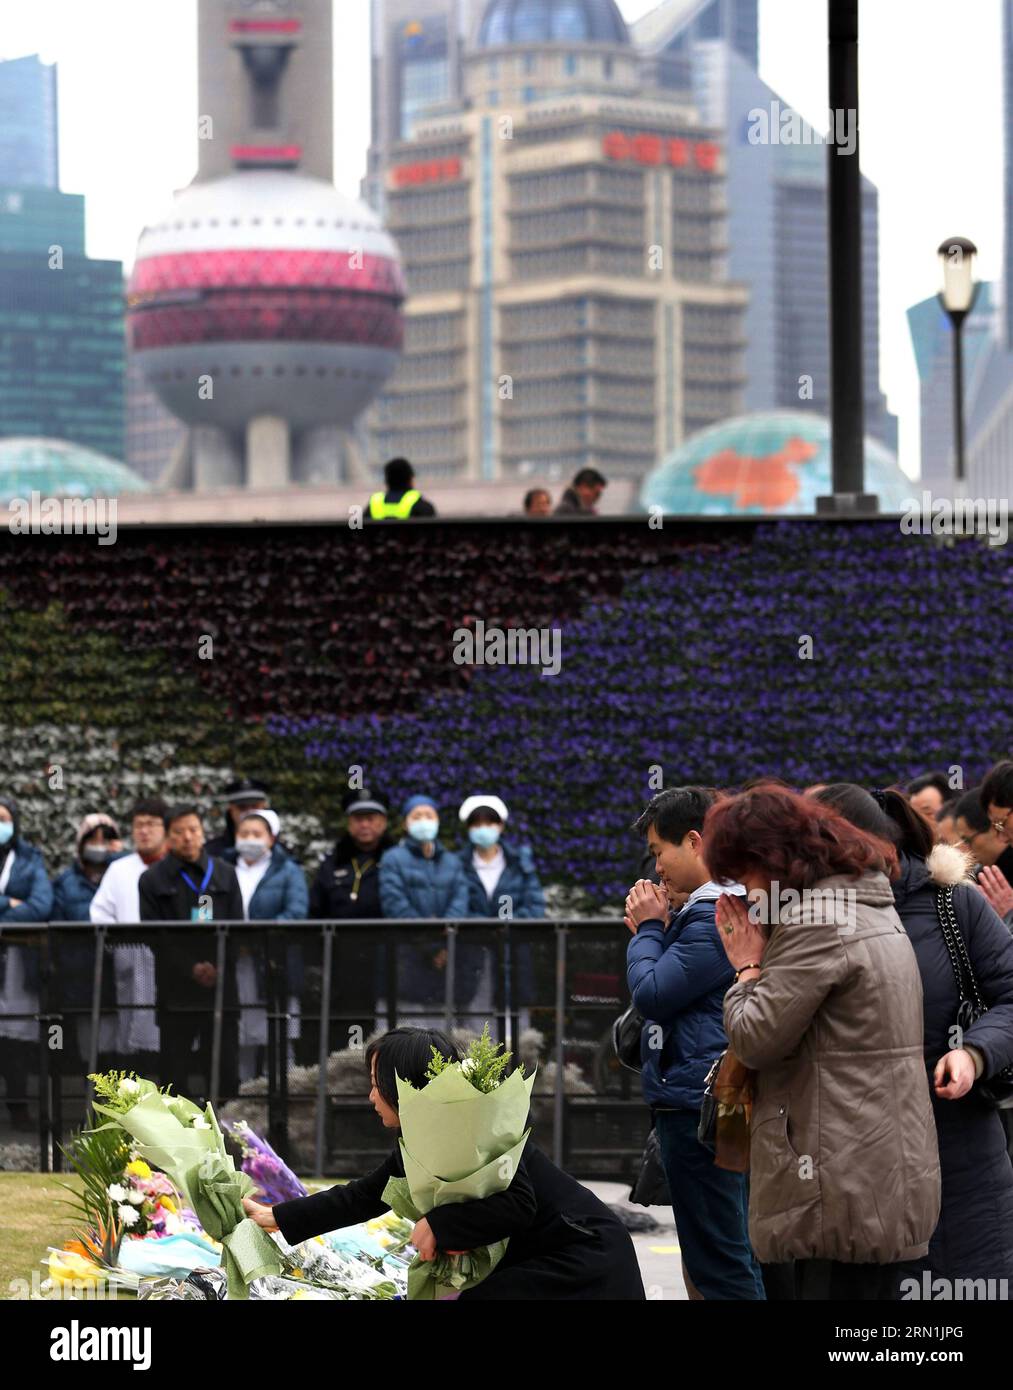 AKTUELLES ZEITGESCHEHEN Gedenken an die Opfer der Massenpanik in Shanghai (150106) -- SHANGHAI, Jan. 6, 2015 -- Citizens mourn for stampede victims at the Bund in Shanghai, east China, Jan. 6, 2015, seven days after the tragedy. ) (wyo) CHINA-SHANGHAI-STAMPEDE-MOURNING (CN) DingxTing PUBLICATIONxNOTxINxCHN   News Current events Remembrance to the Victims the Mass panic in Shanghai  Shanghai Jan 6 2015 Citizens Morne for Stampede Victims AT The Confederation in Shanghai East China Jan 6 2015 Seven Days After The Tragedy  China Shanghai Stampede Mourning CN  PUBLICATIONxNOTxINxCHN Stock Photo